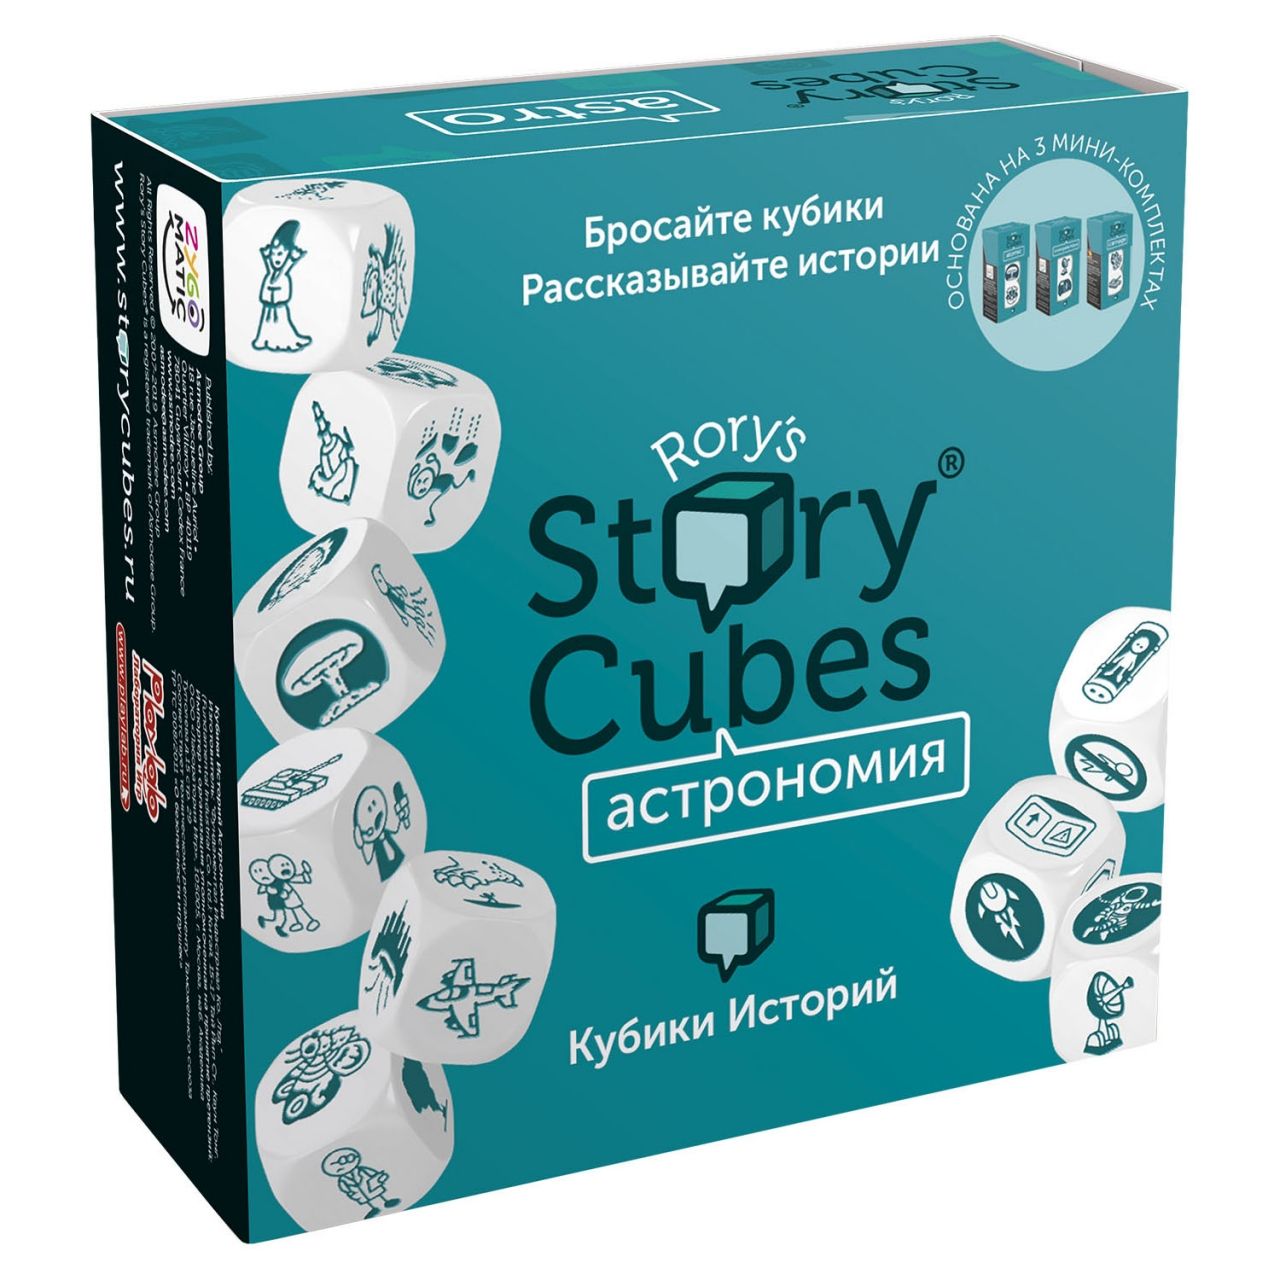 Настольная игра RORYS STORY CUBES RSC31 кубики историй Астрономия кубики историй путешествия